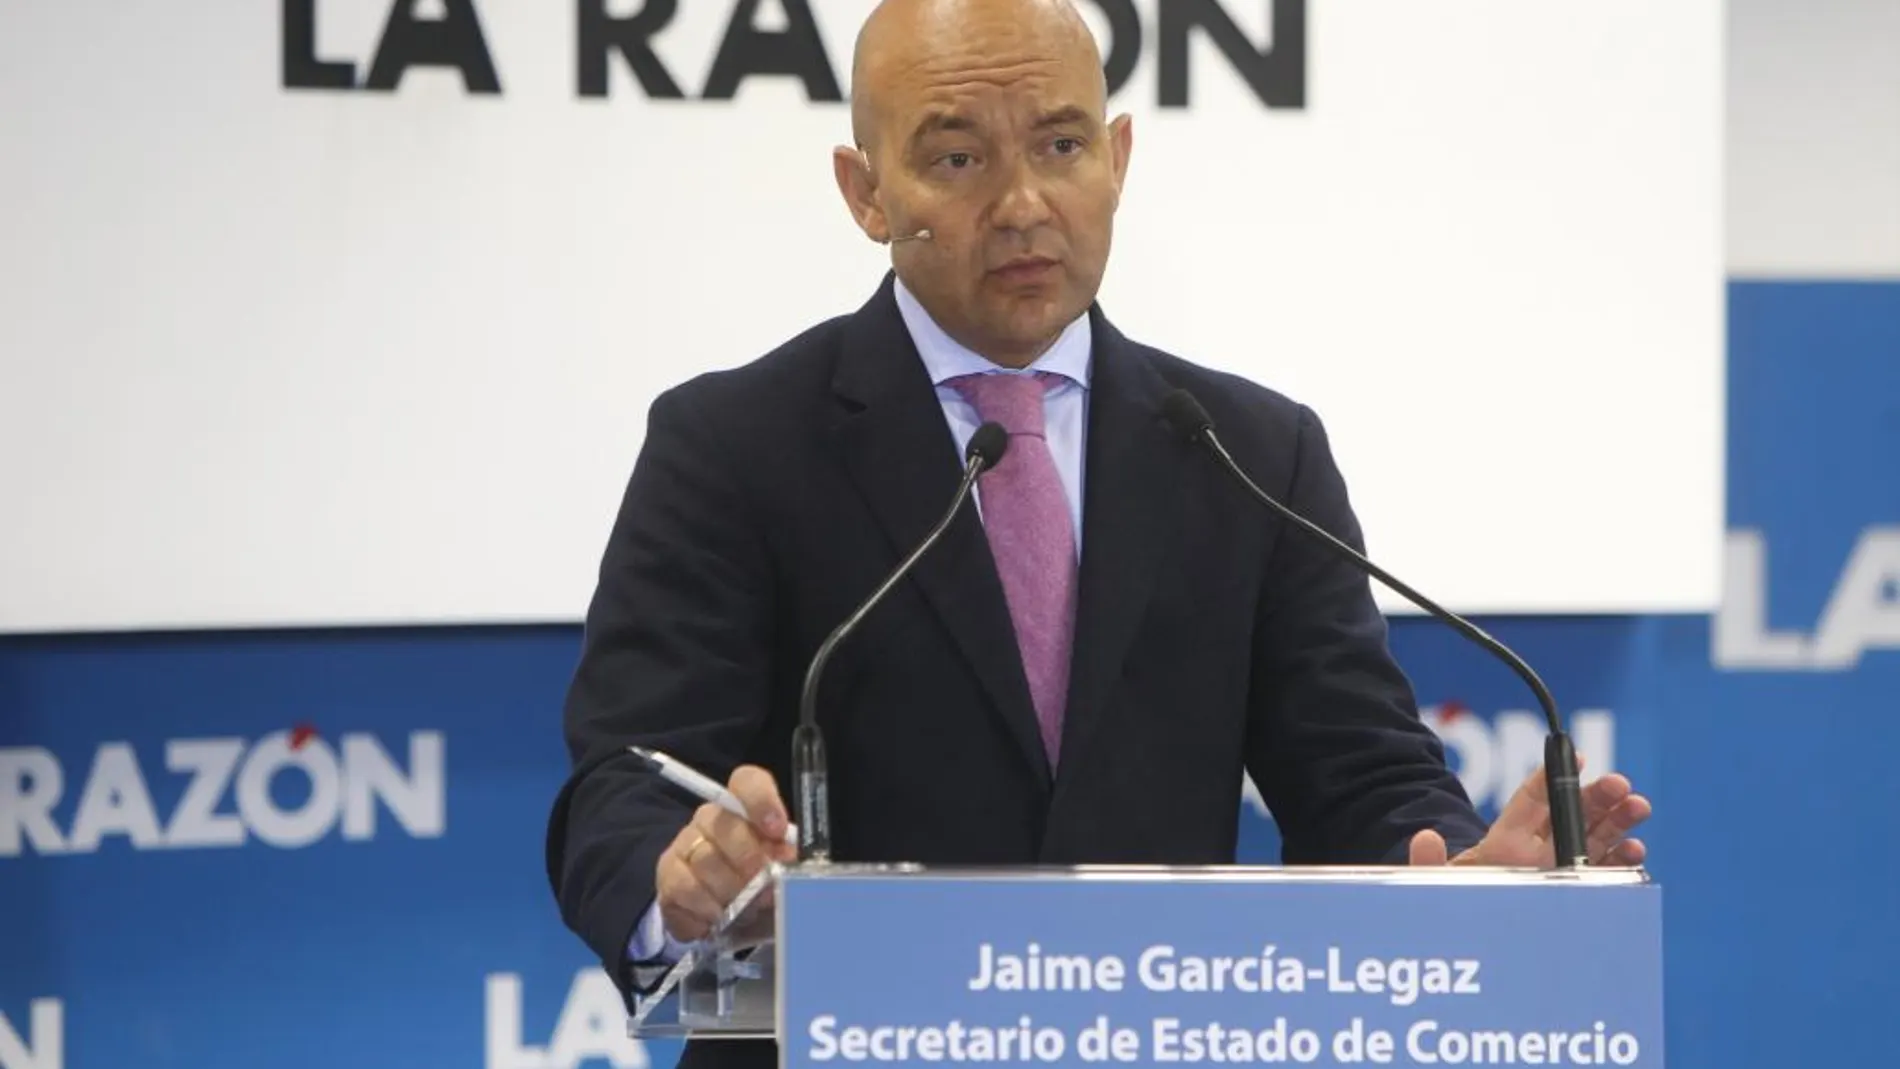 Jaime García-Legaz, Secretario de Estado de Comercio, durante el desayuno informativo en La Razón